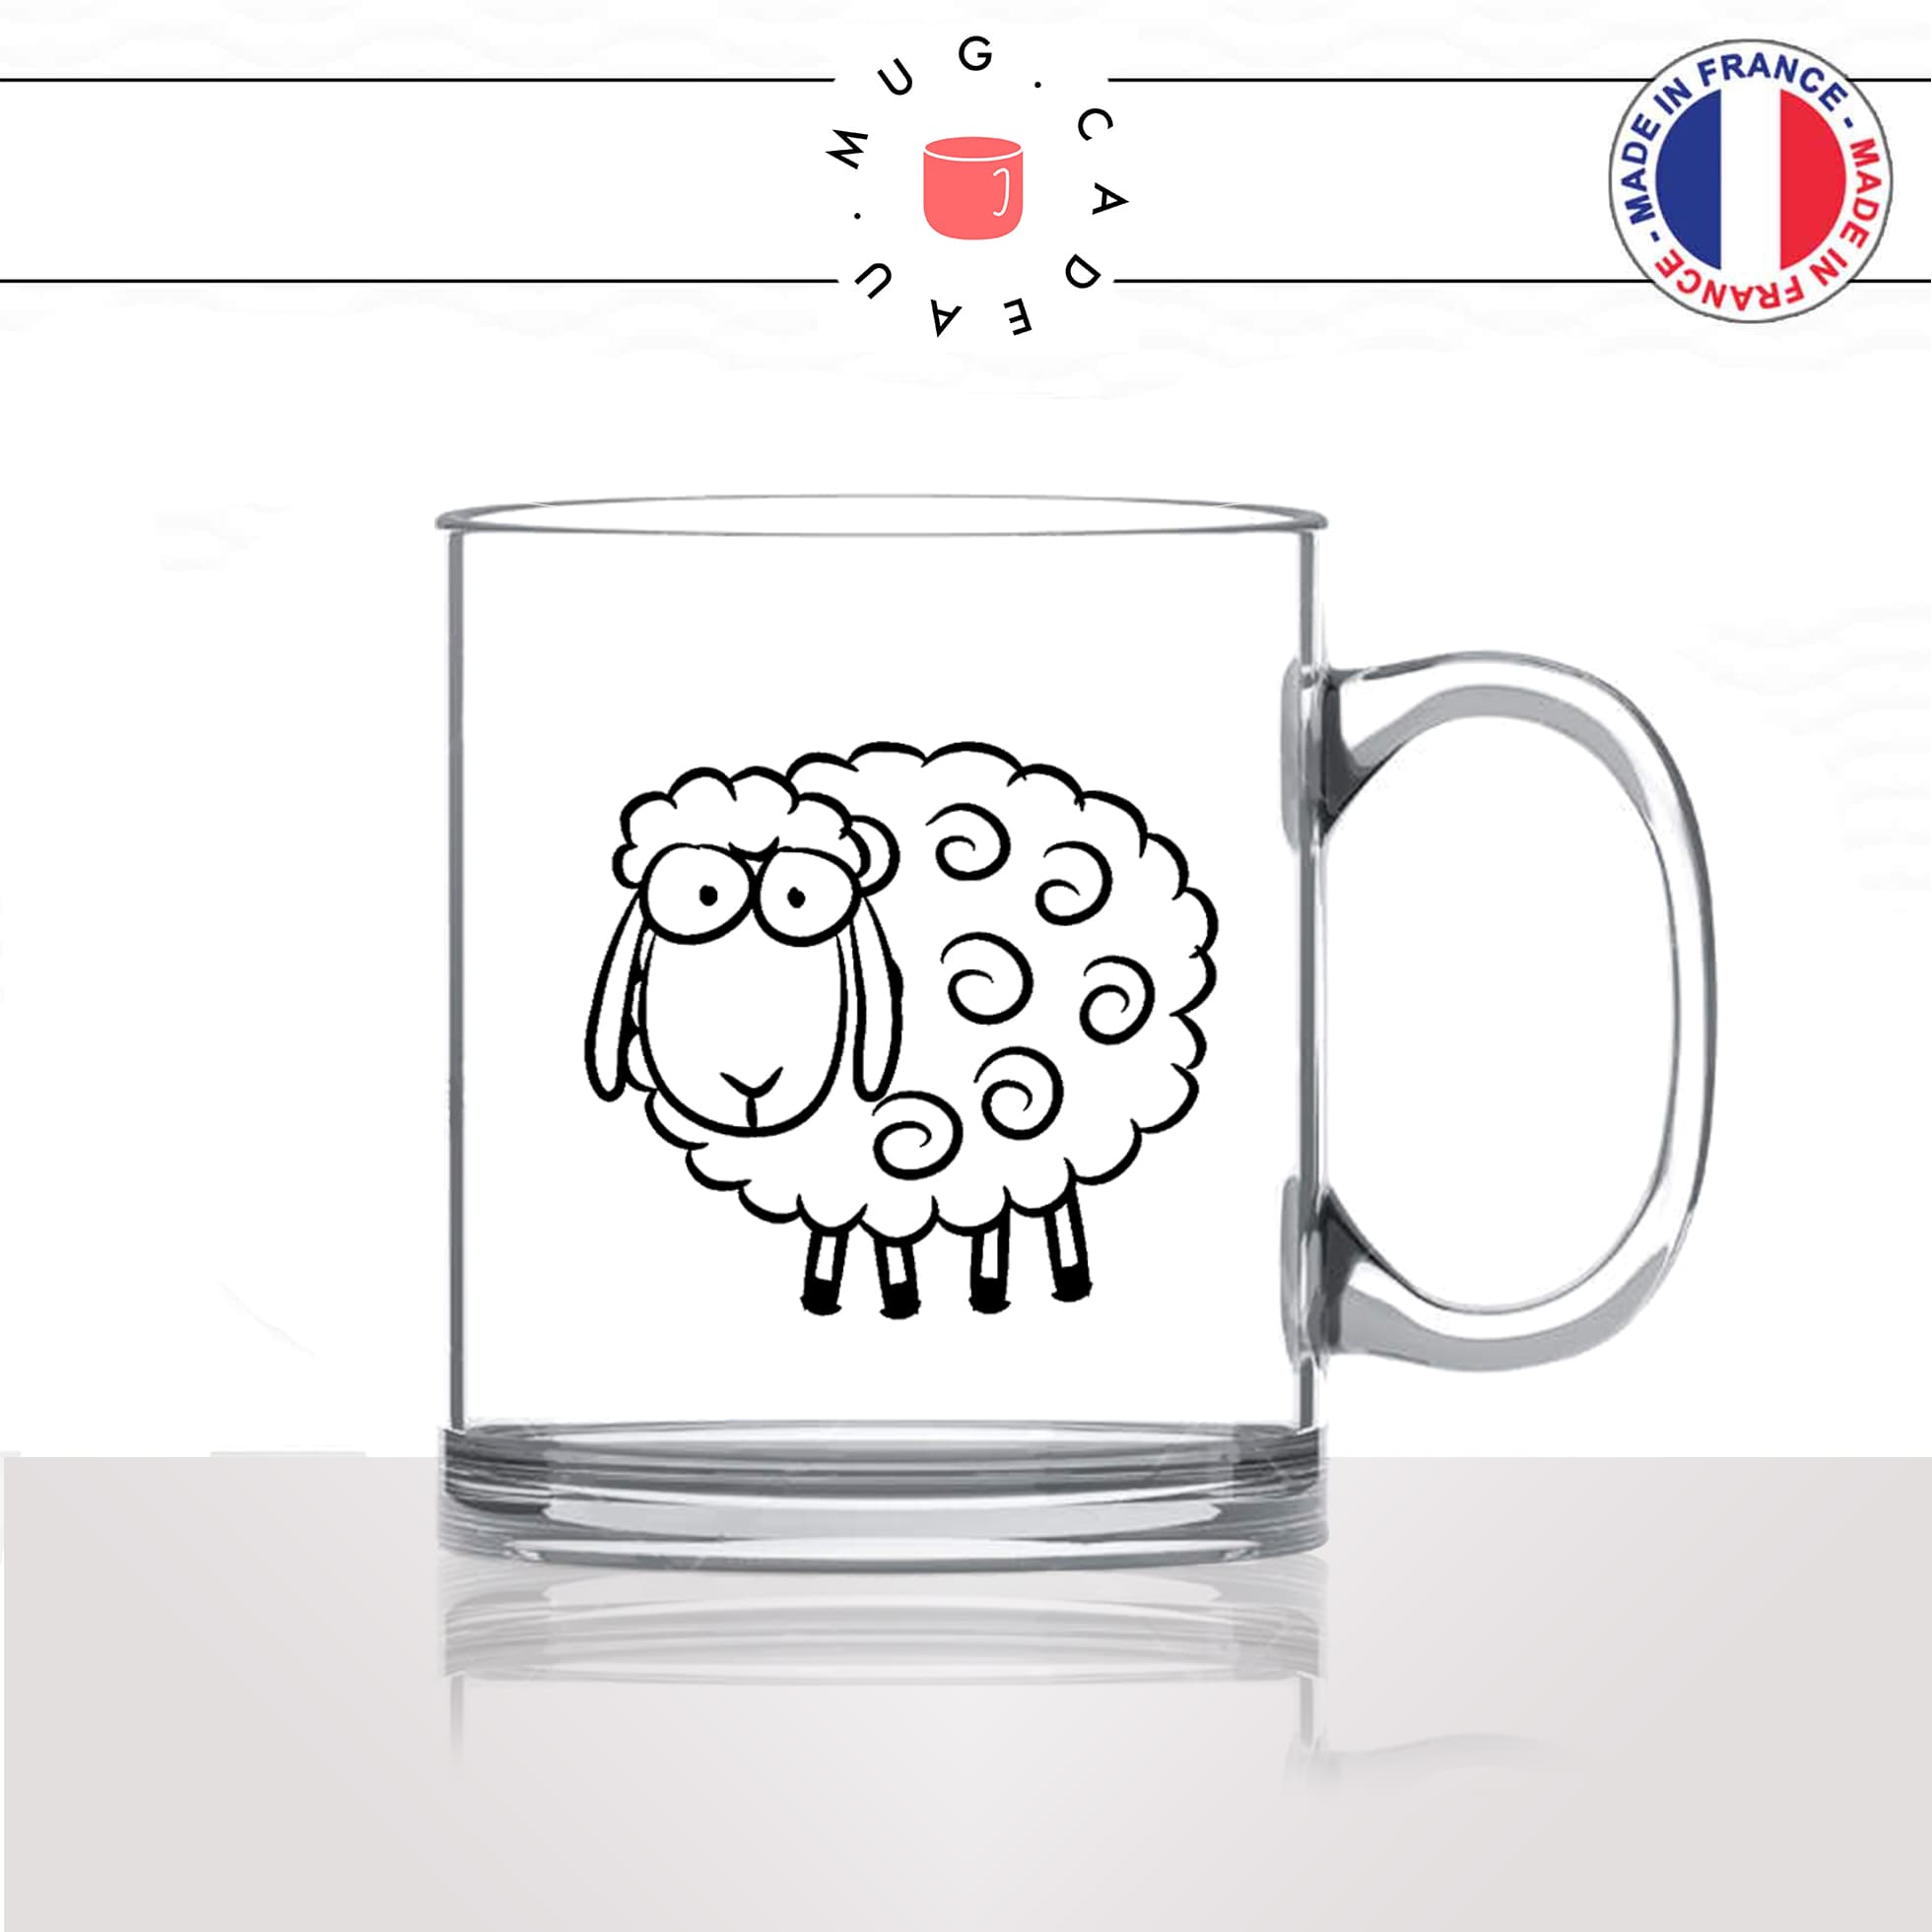 mug-tasse-en-verre-transparent-glass-mouton-animal-suiveur-social-panurge-politique-gilet-jaune-humour-fun-idée-cadeau-originale-cool2